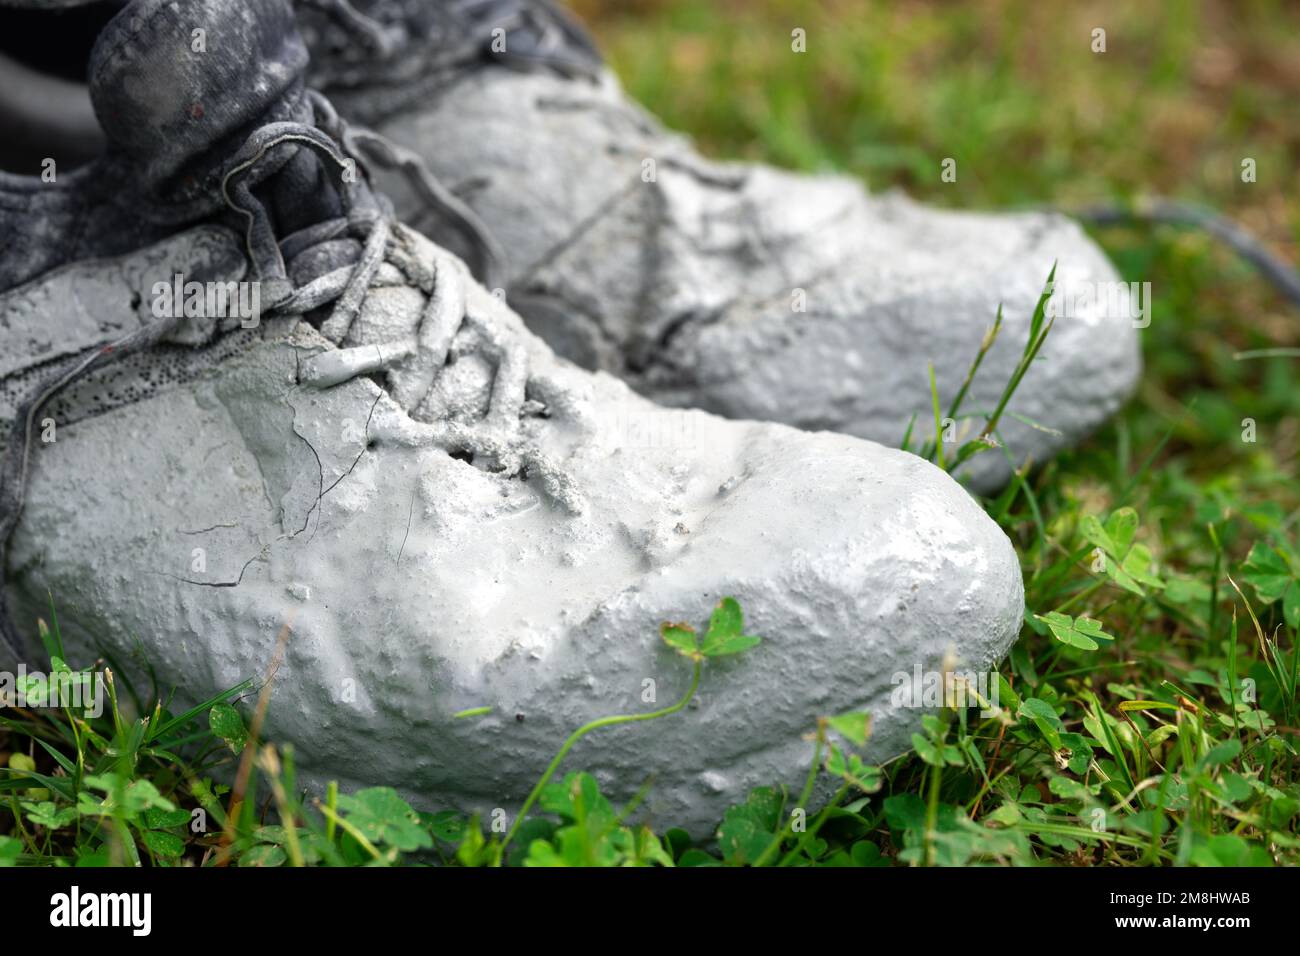 Chaussures fortement tachées dans la peinture grise sur l'herbe verte Banque D'Images